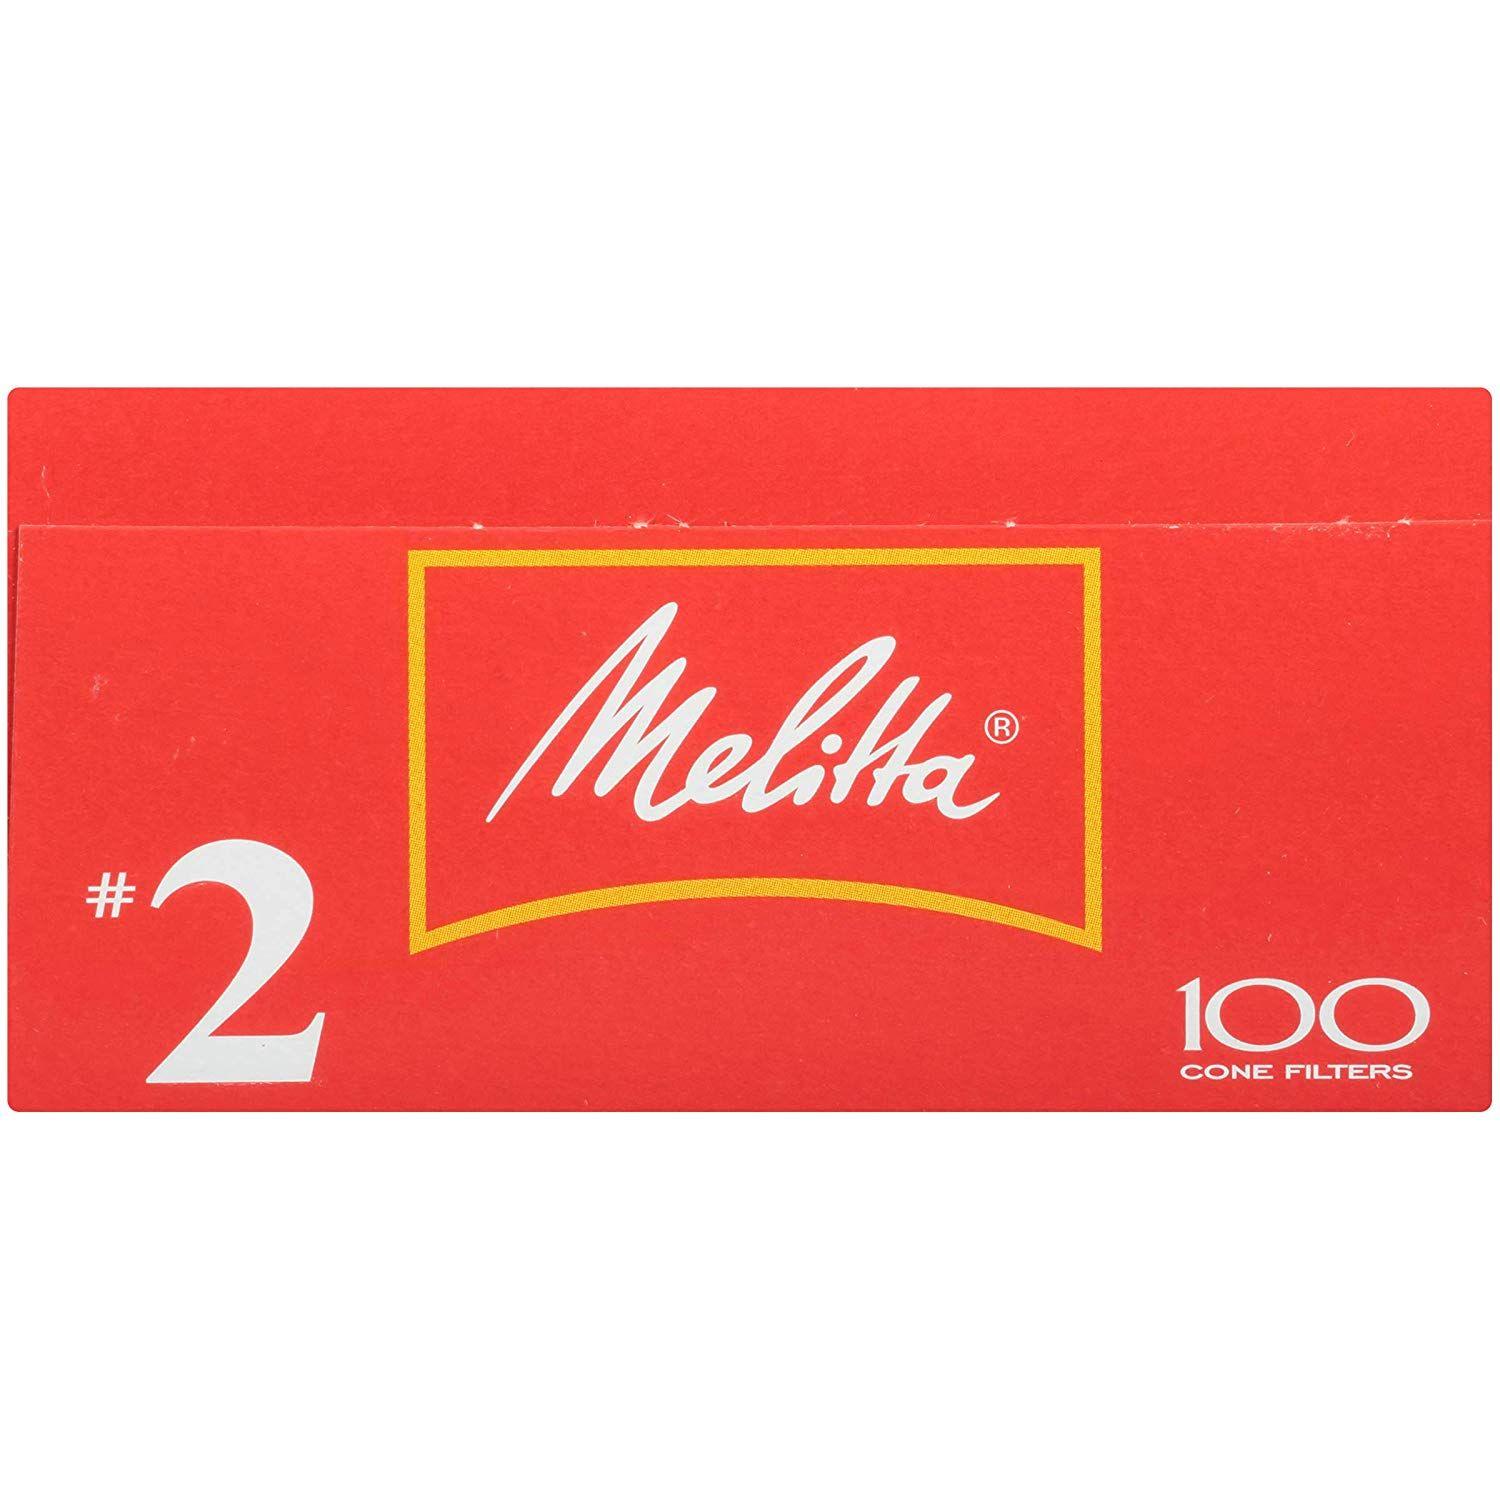 Melitta Logo - Melitta Cone Coffee Filters, White, No. 100 count